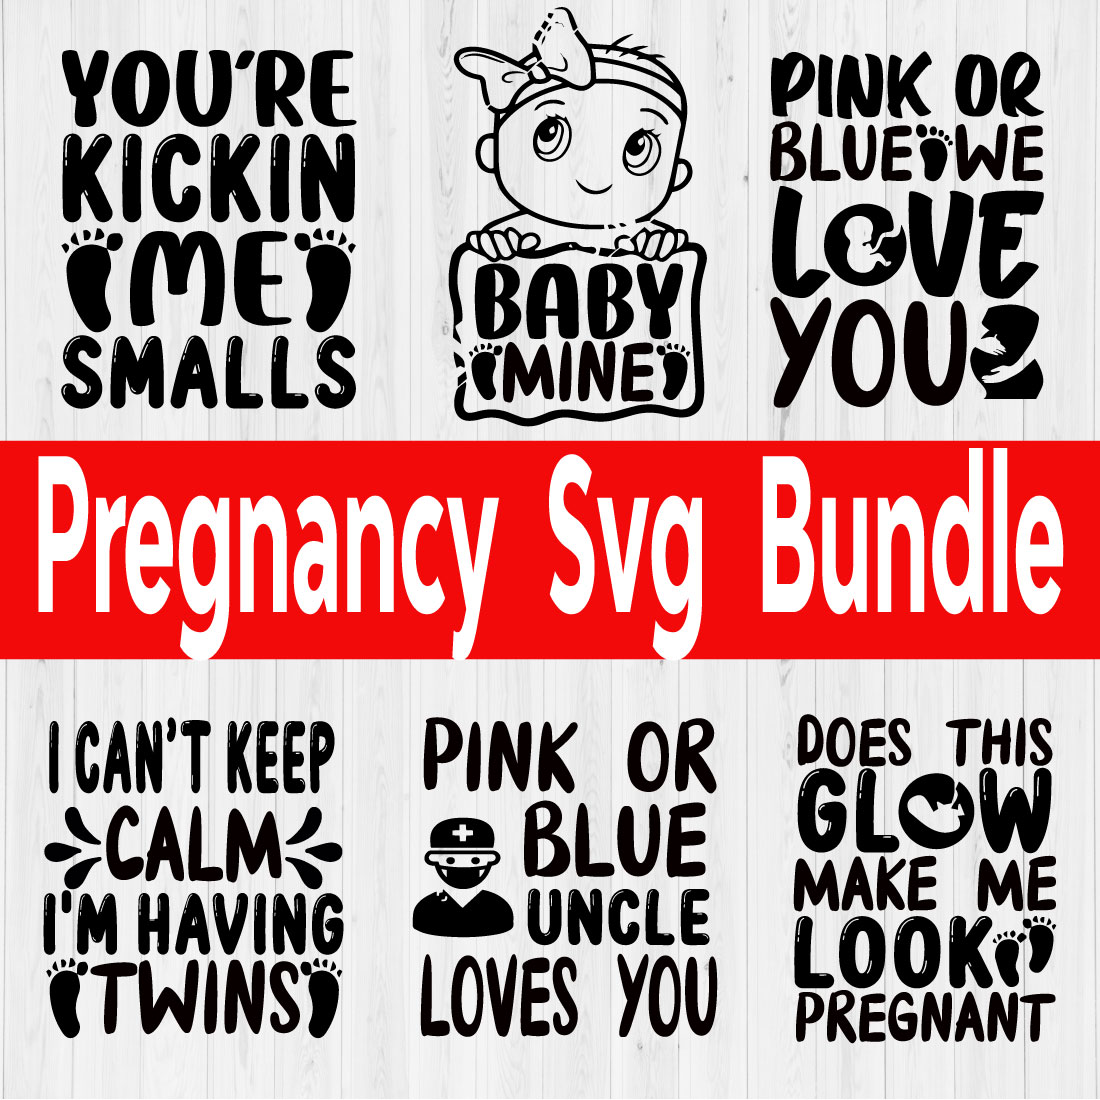 Pregnancy Svg Design Bundle Vol6 cover image.